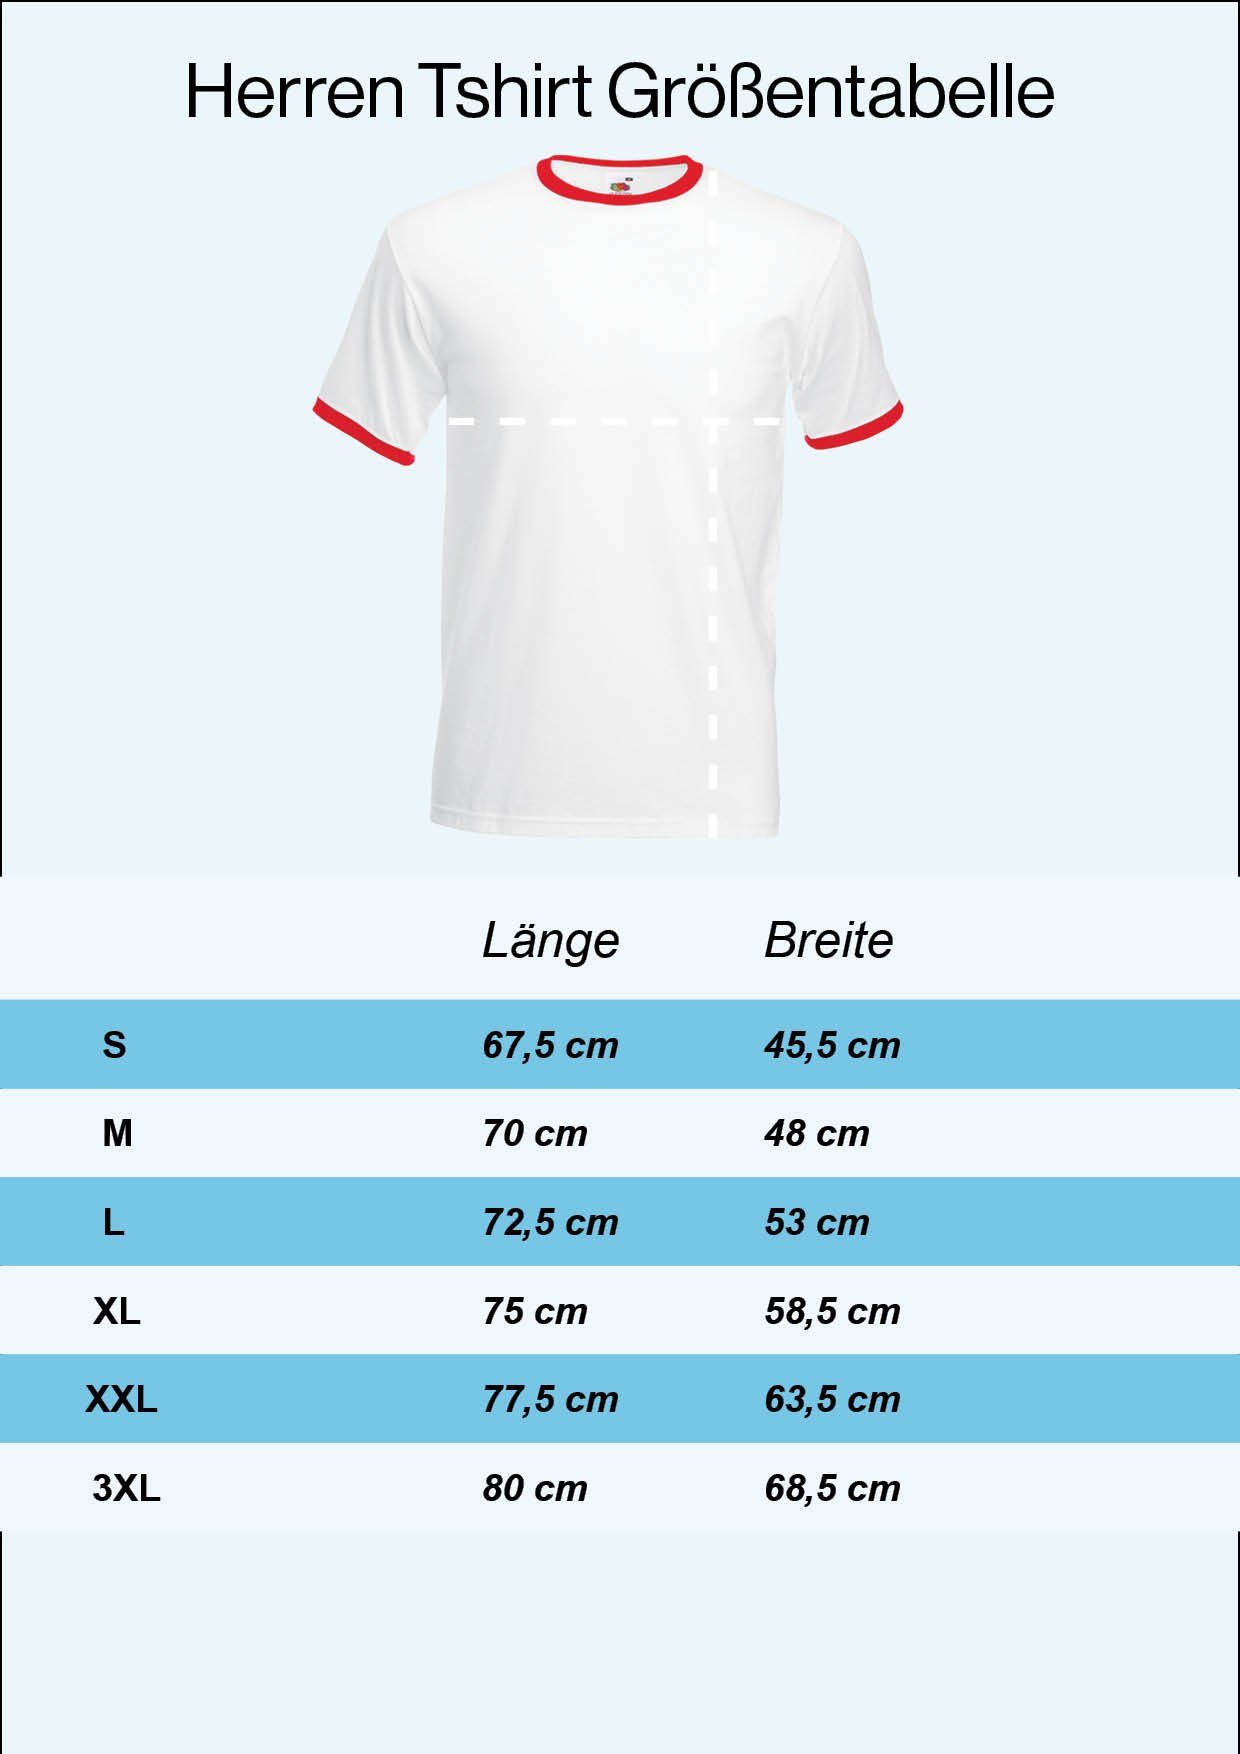 Youth Designz Trikot mit Shirt Frontprint Herren Fußball Look im Rot-Weiß Kanada trendigem T-Shirt